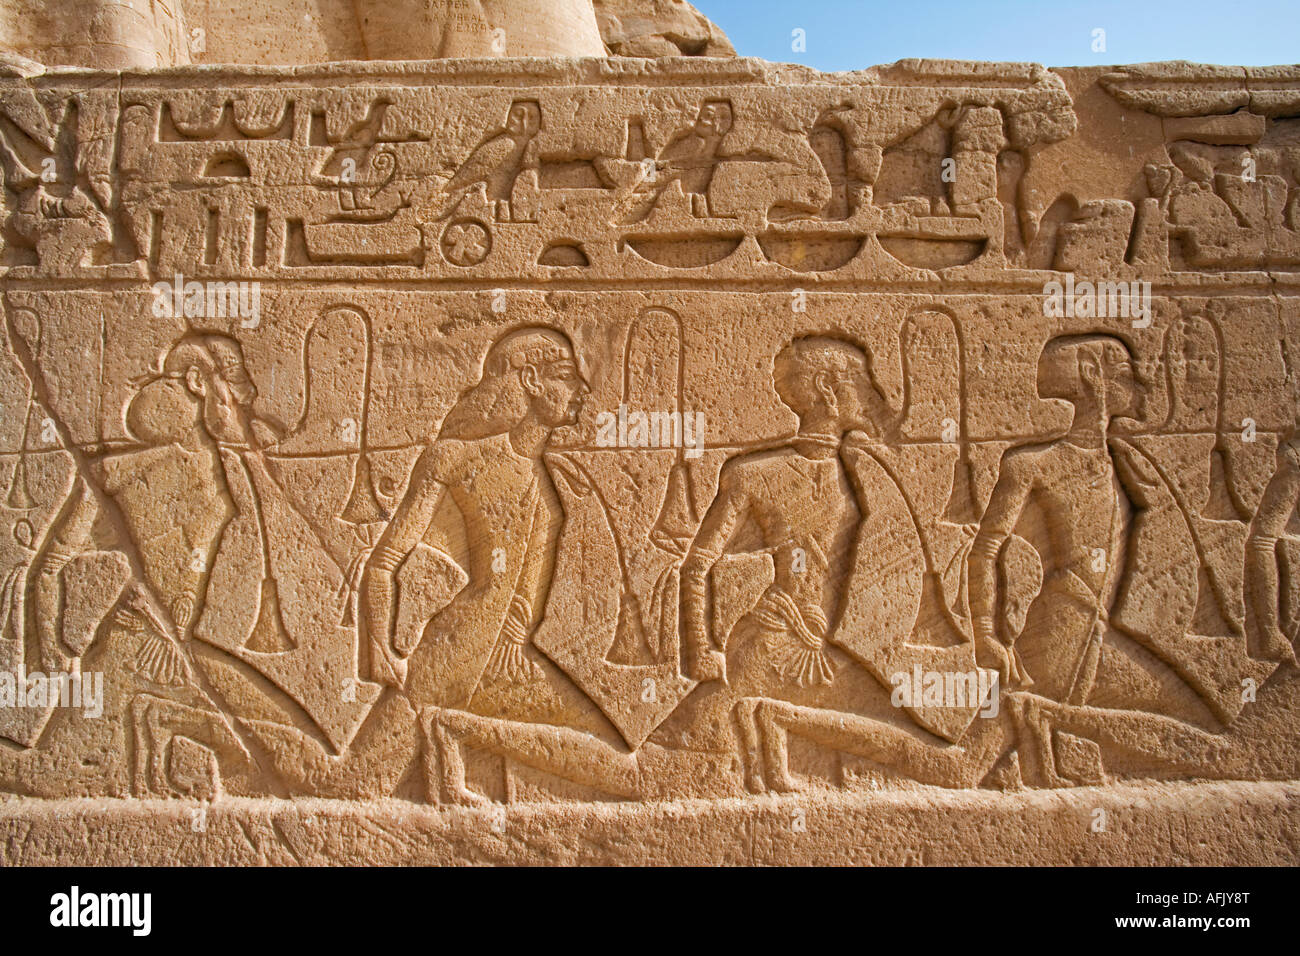 Schnitzereien zeigen Häftlinge gefangen in der Schlacht von Ramses II in Abu Simbel. Das gesamte Gelände wurde in den 1960er Jahren 200 m verschoben. Stockfoto